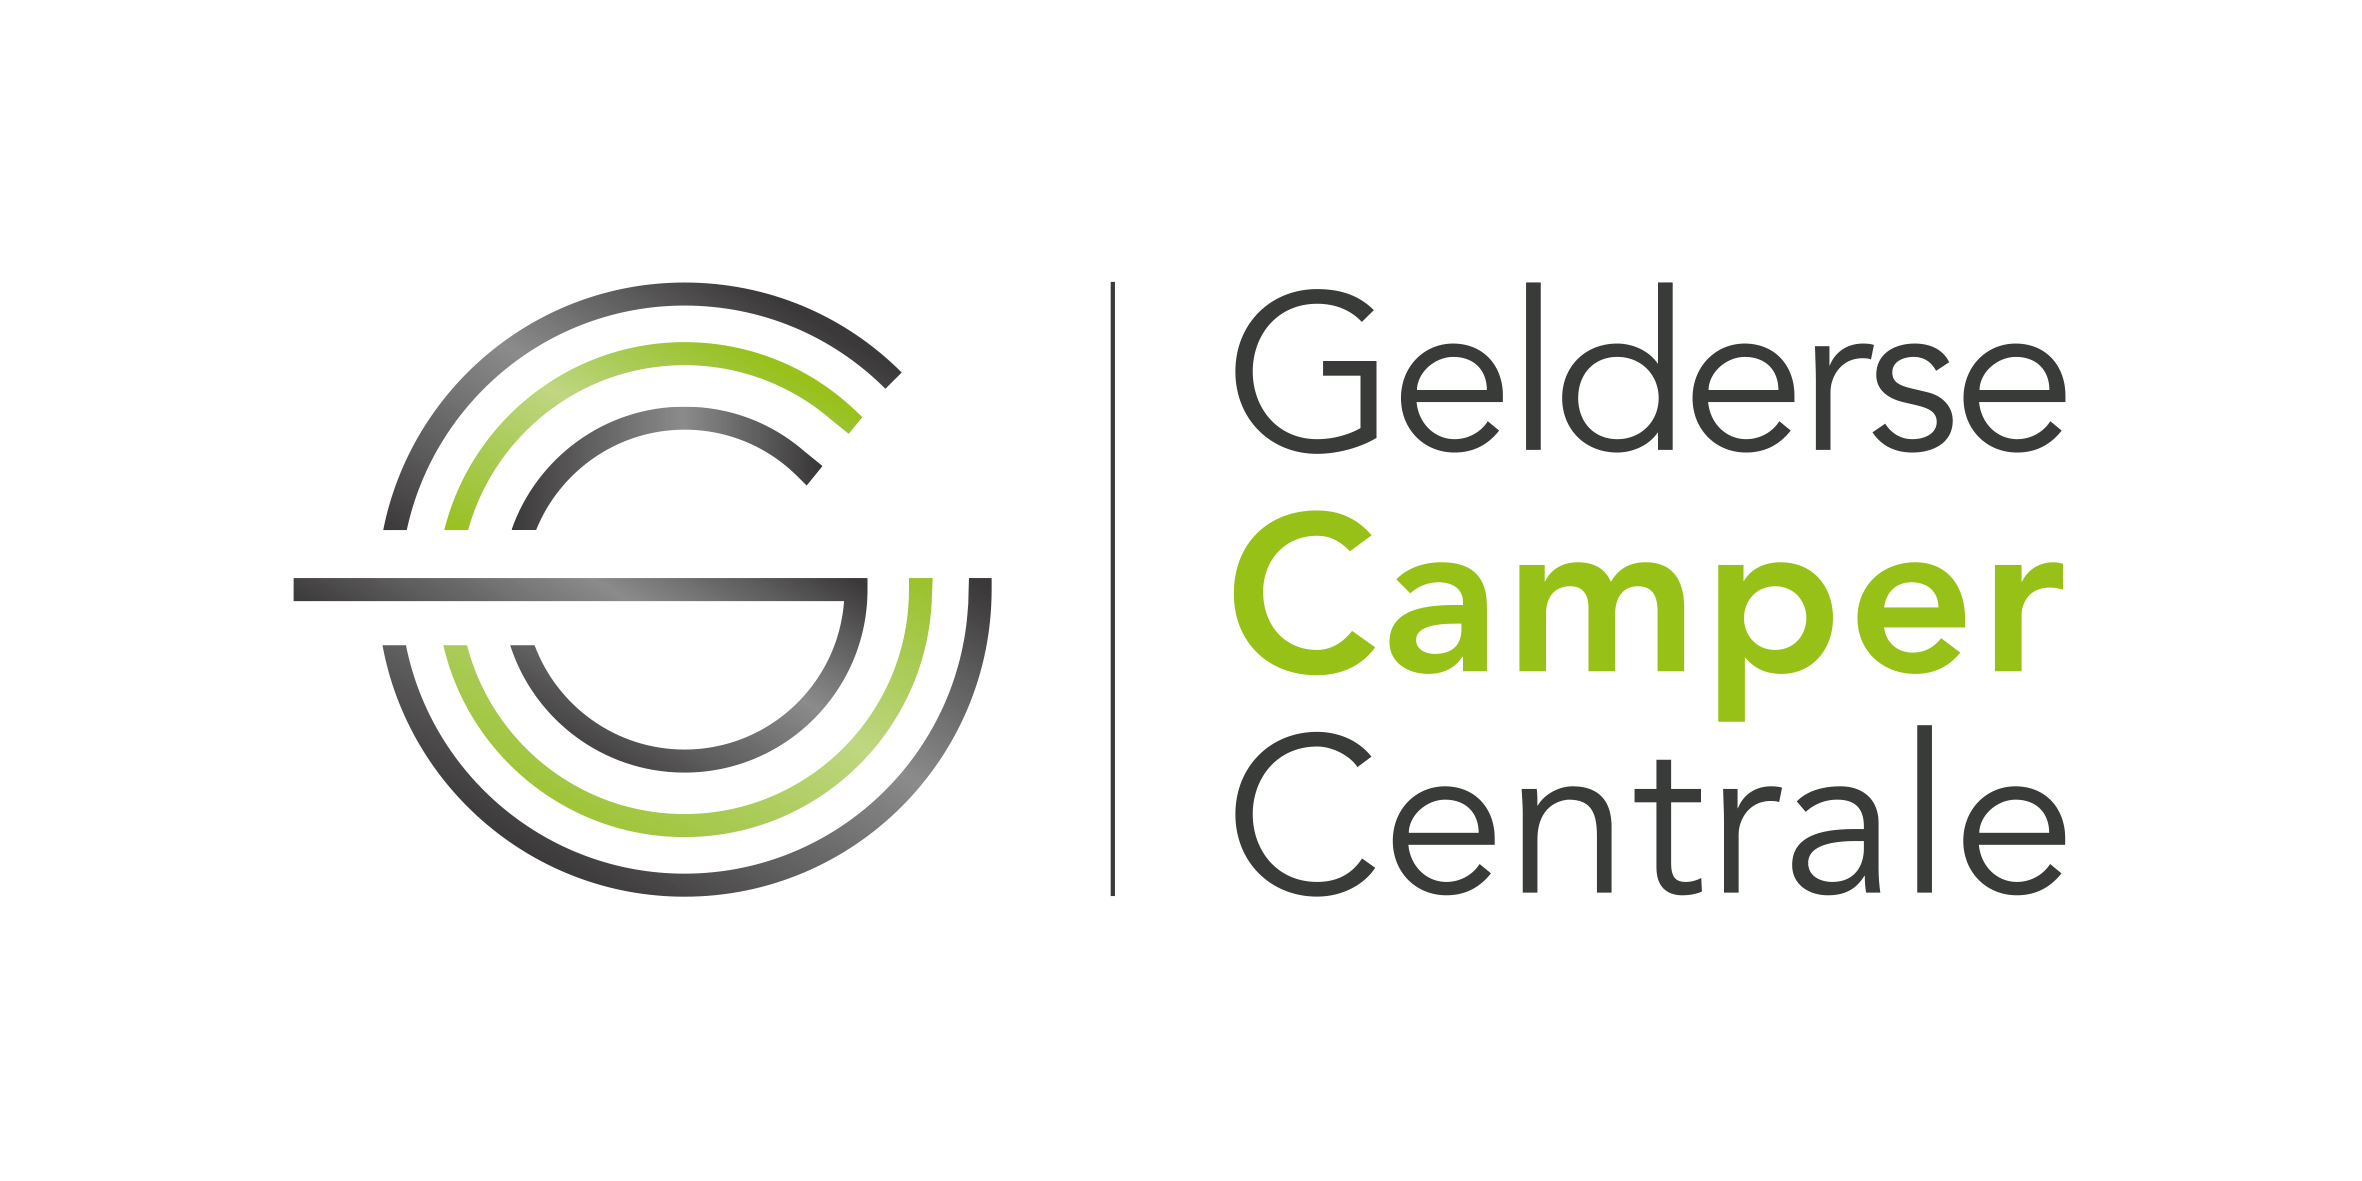 Gelderland Camper Central